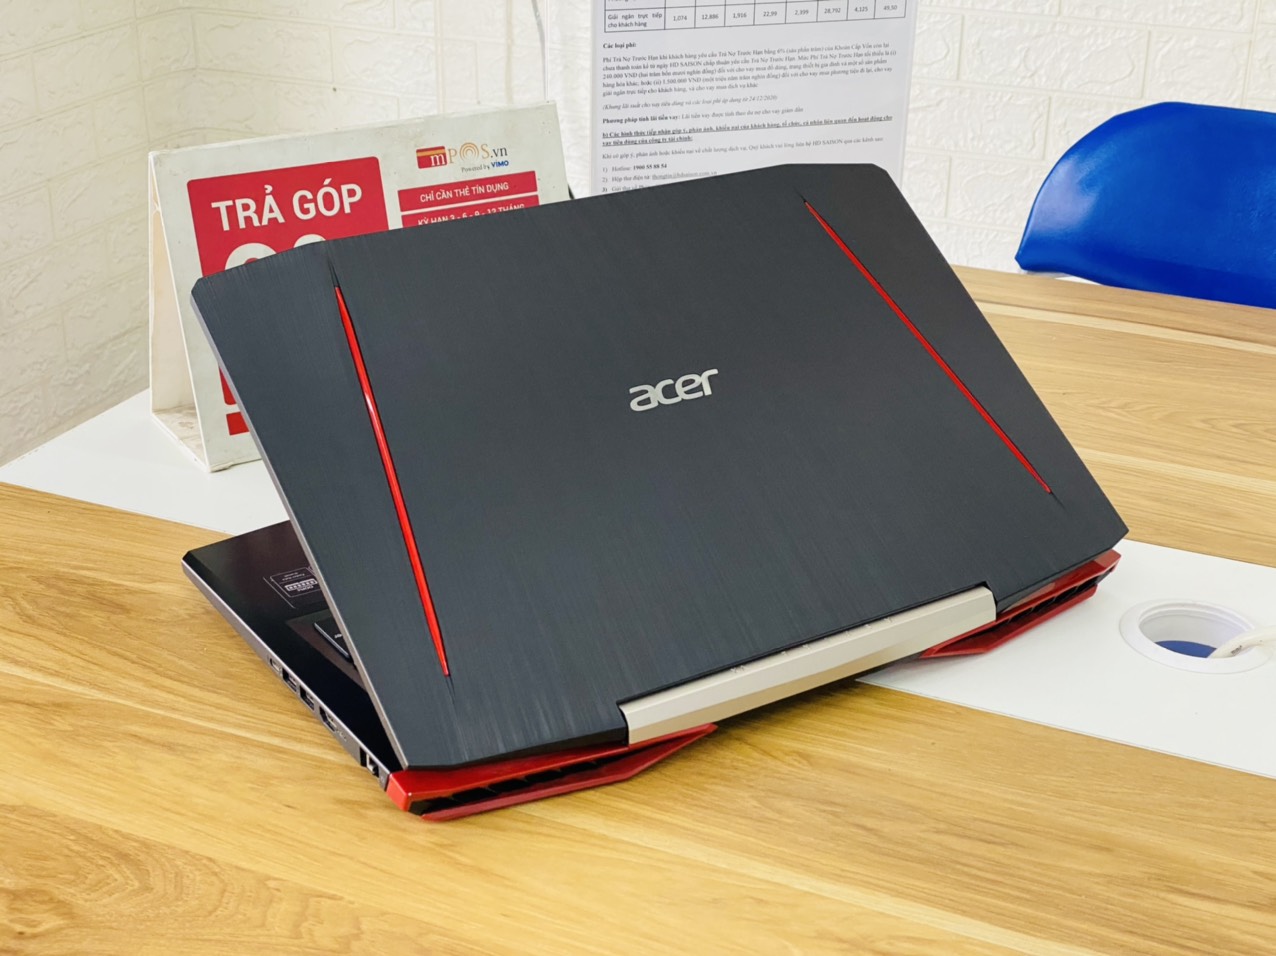 Laptop Gaming Acer Aspire VX5-591G i7-7700HQ Ram 8G SSD 128G+HDD 1TB Nvidia GTX 1050 15.6 inch Full HD